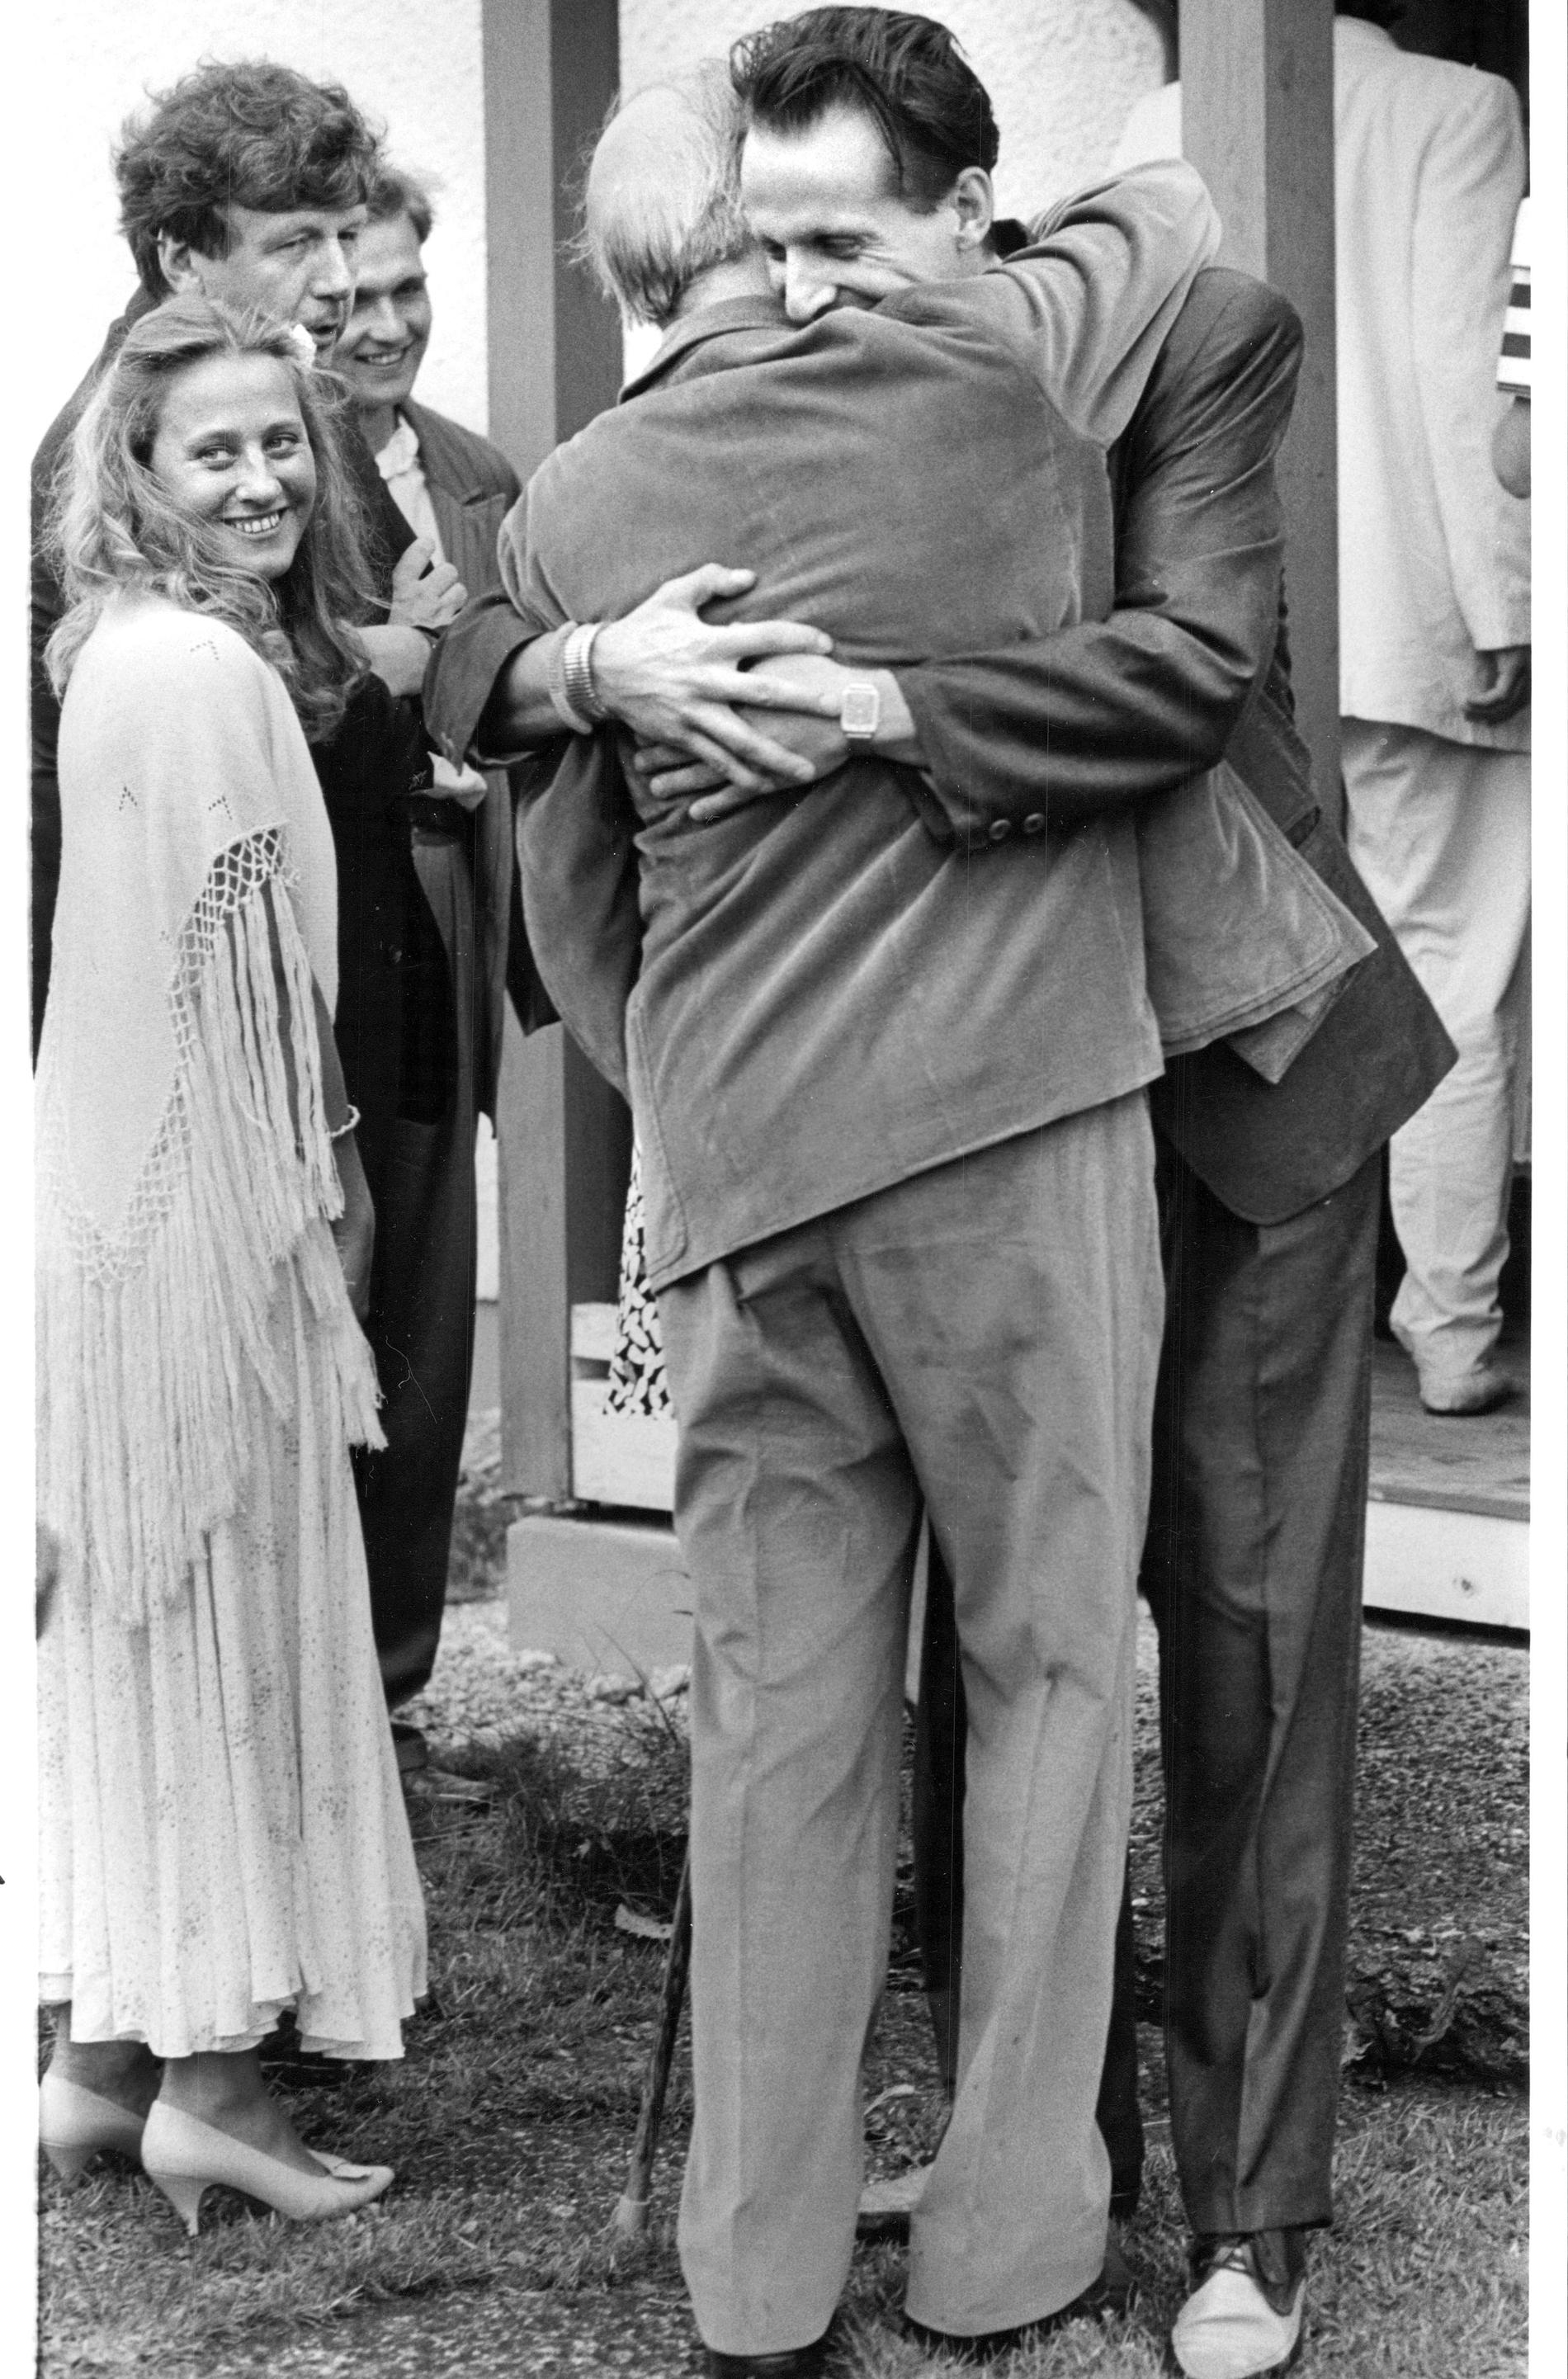 Peter Stormare kramar om Ingmar Bergman när regissören firade sin 70-årsdag 1988 på Fårö.